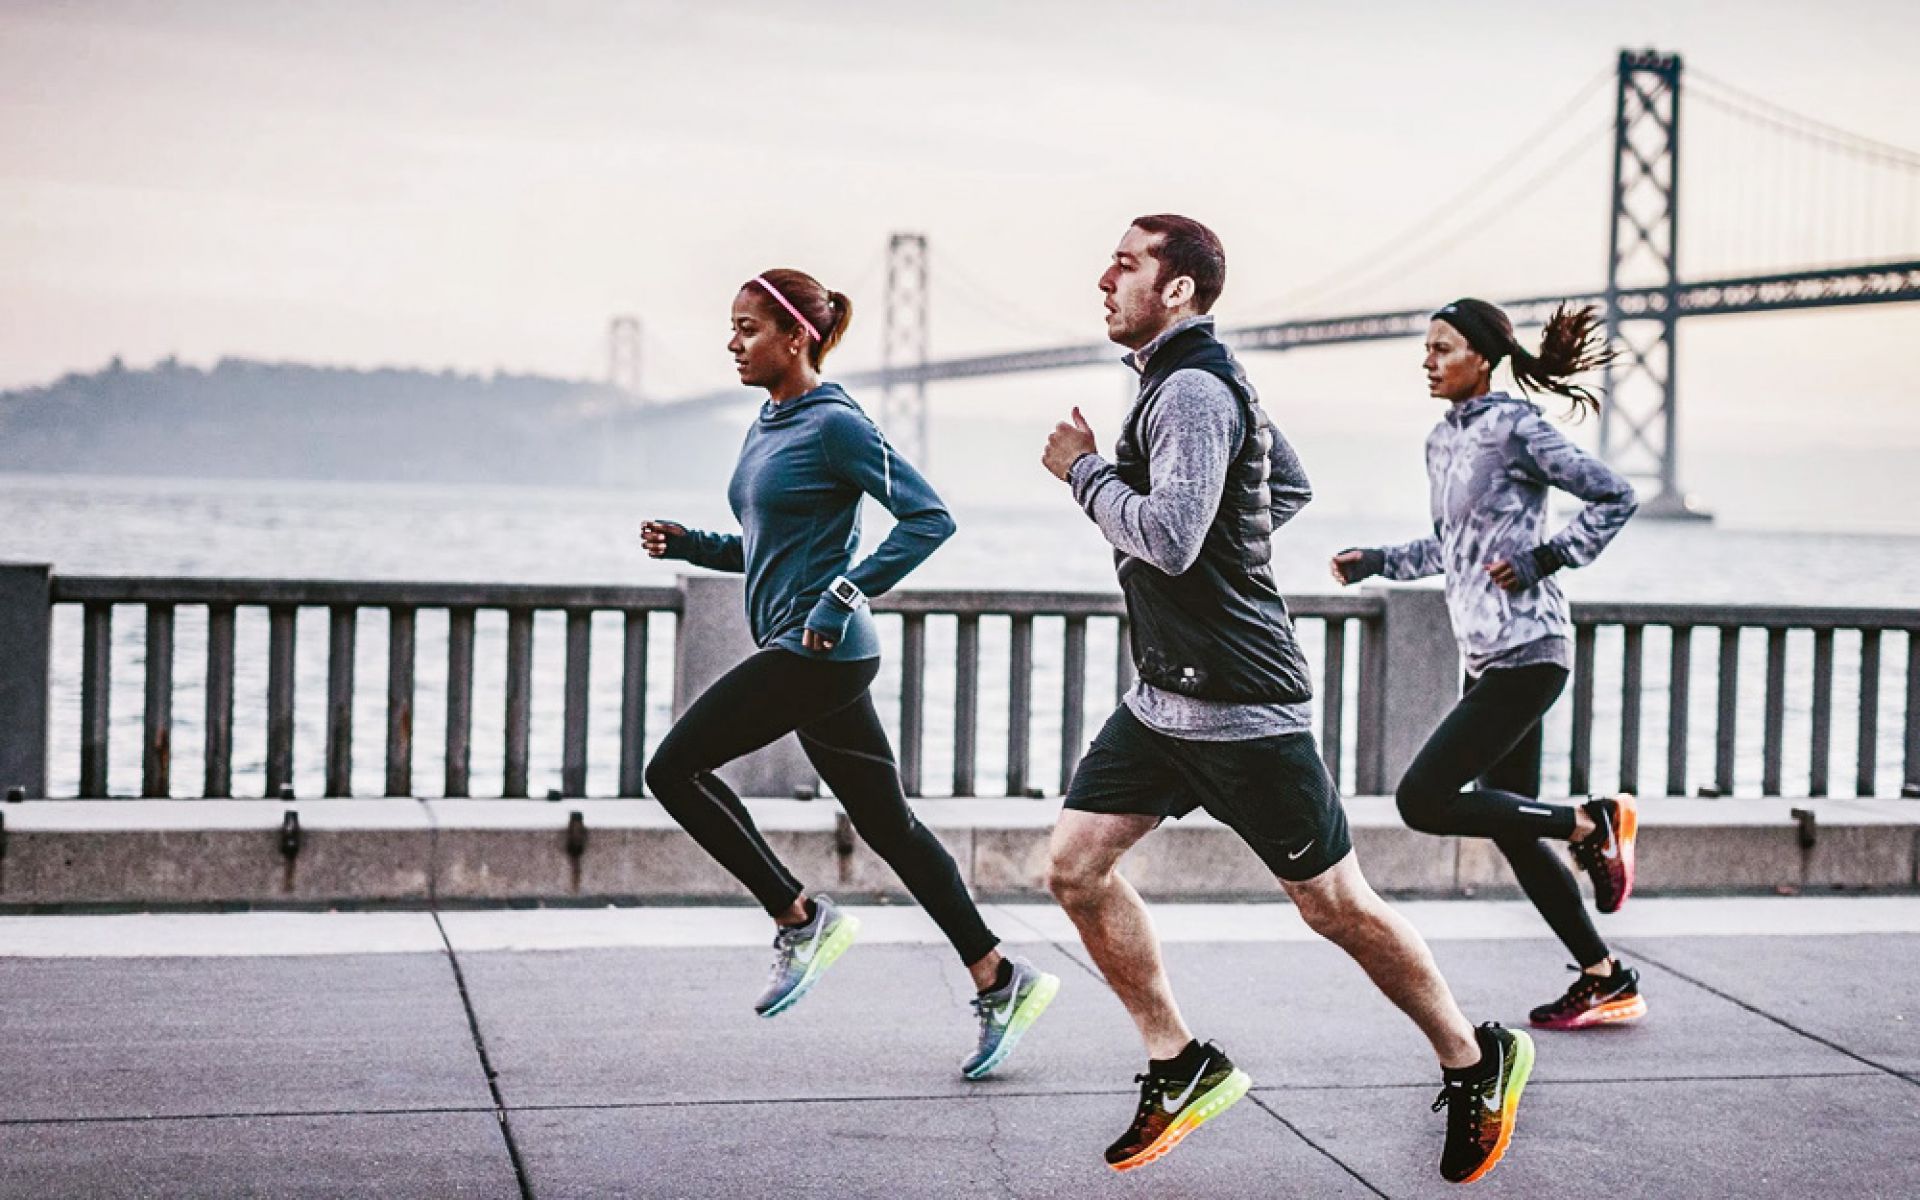 Many of you do sports. Nike Running. Nike Running бег. Занятие спортом. Фотосессия в спортивном стиле.